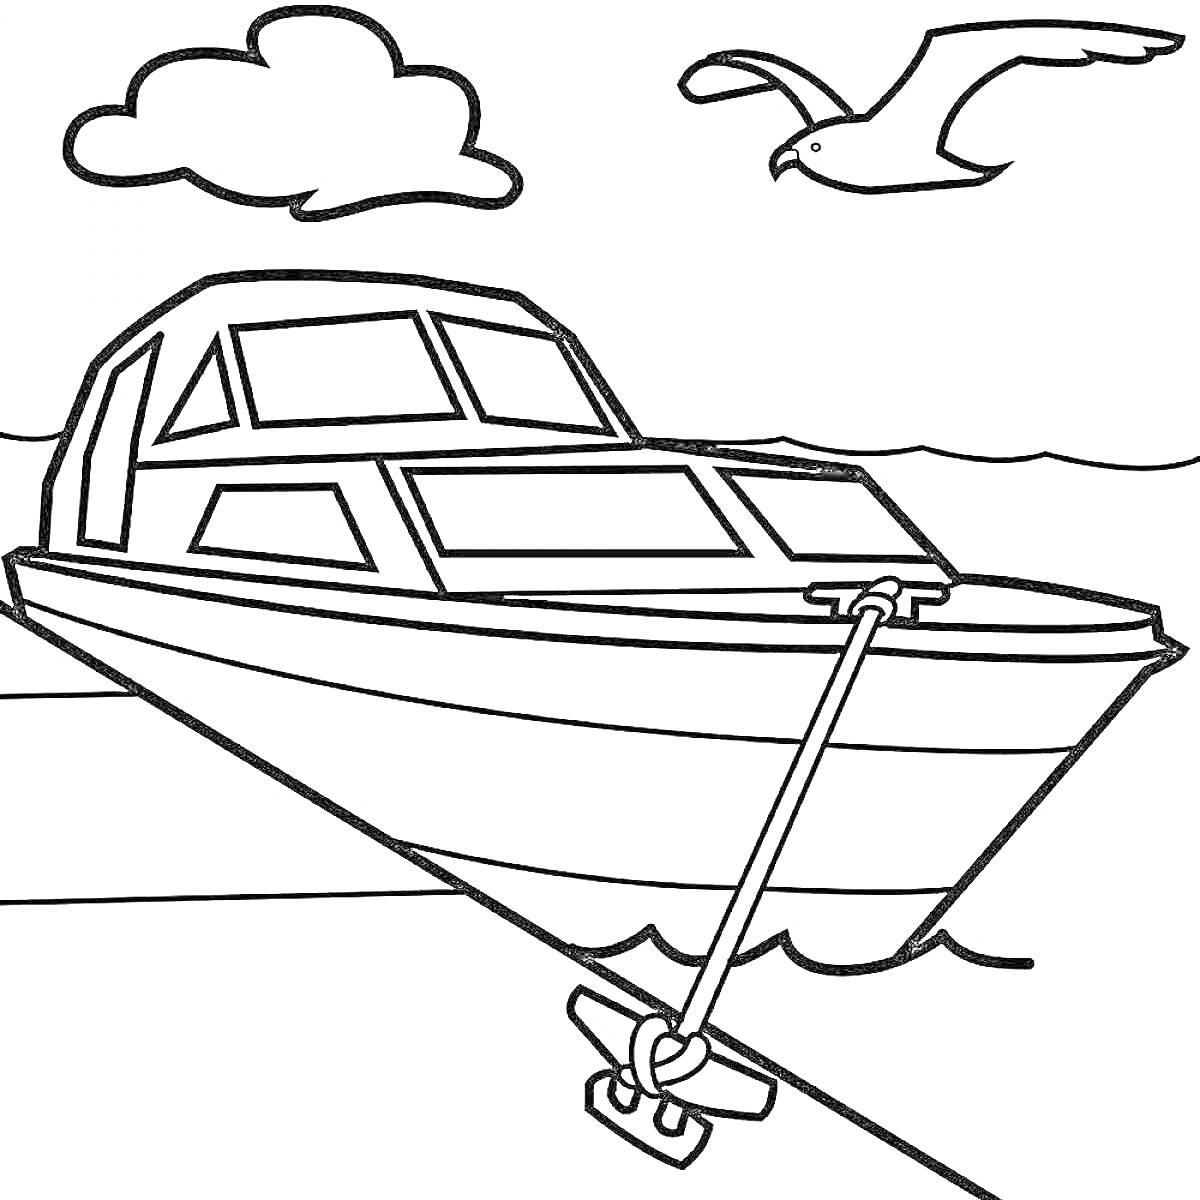 Лодка, привязанная швартовым к причалу, на фоне облака и летящей чайки